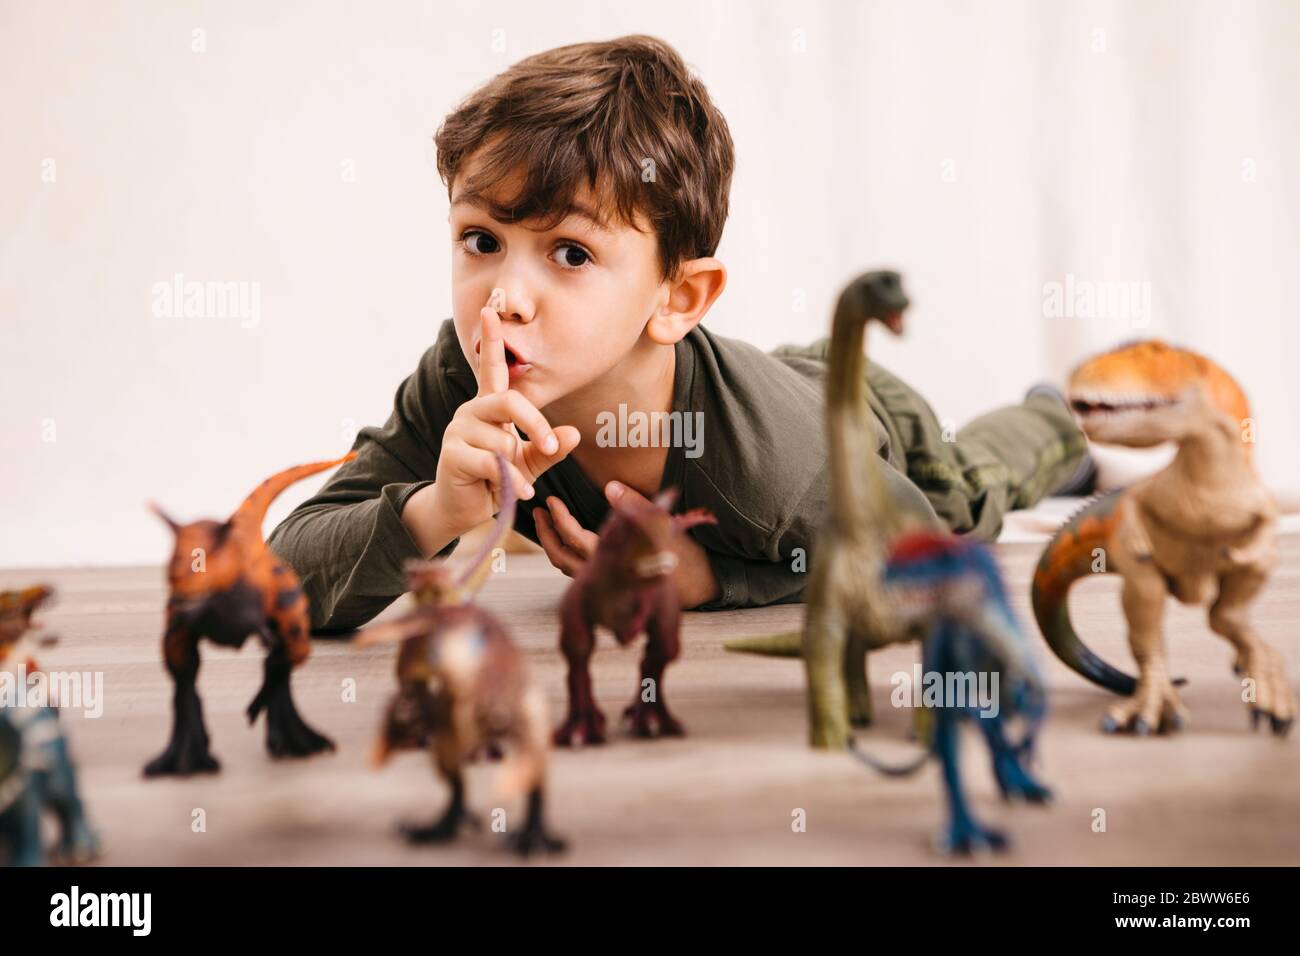 Portrait des kleinen Jungen, der mit Spielzeug-Dinosaurier spielt Stockfoto